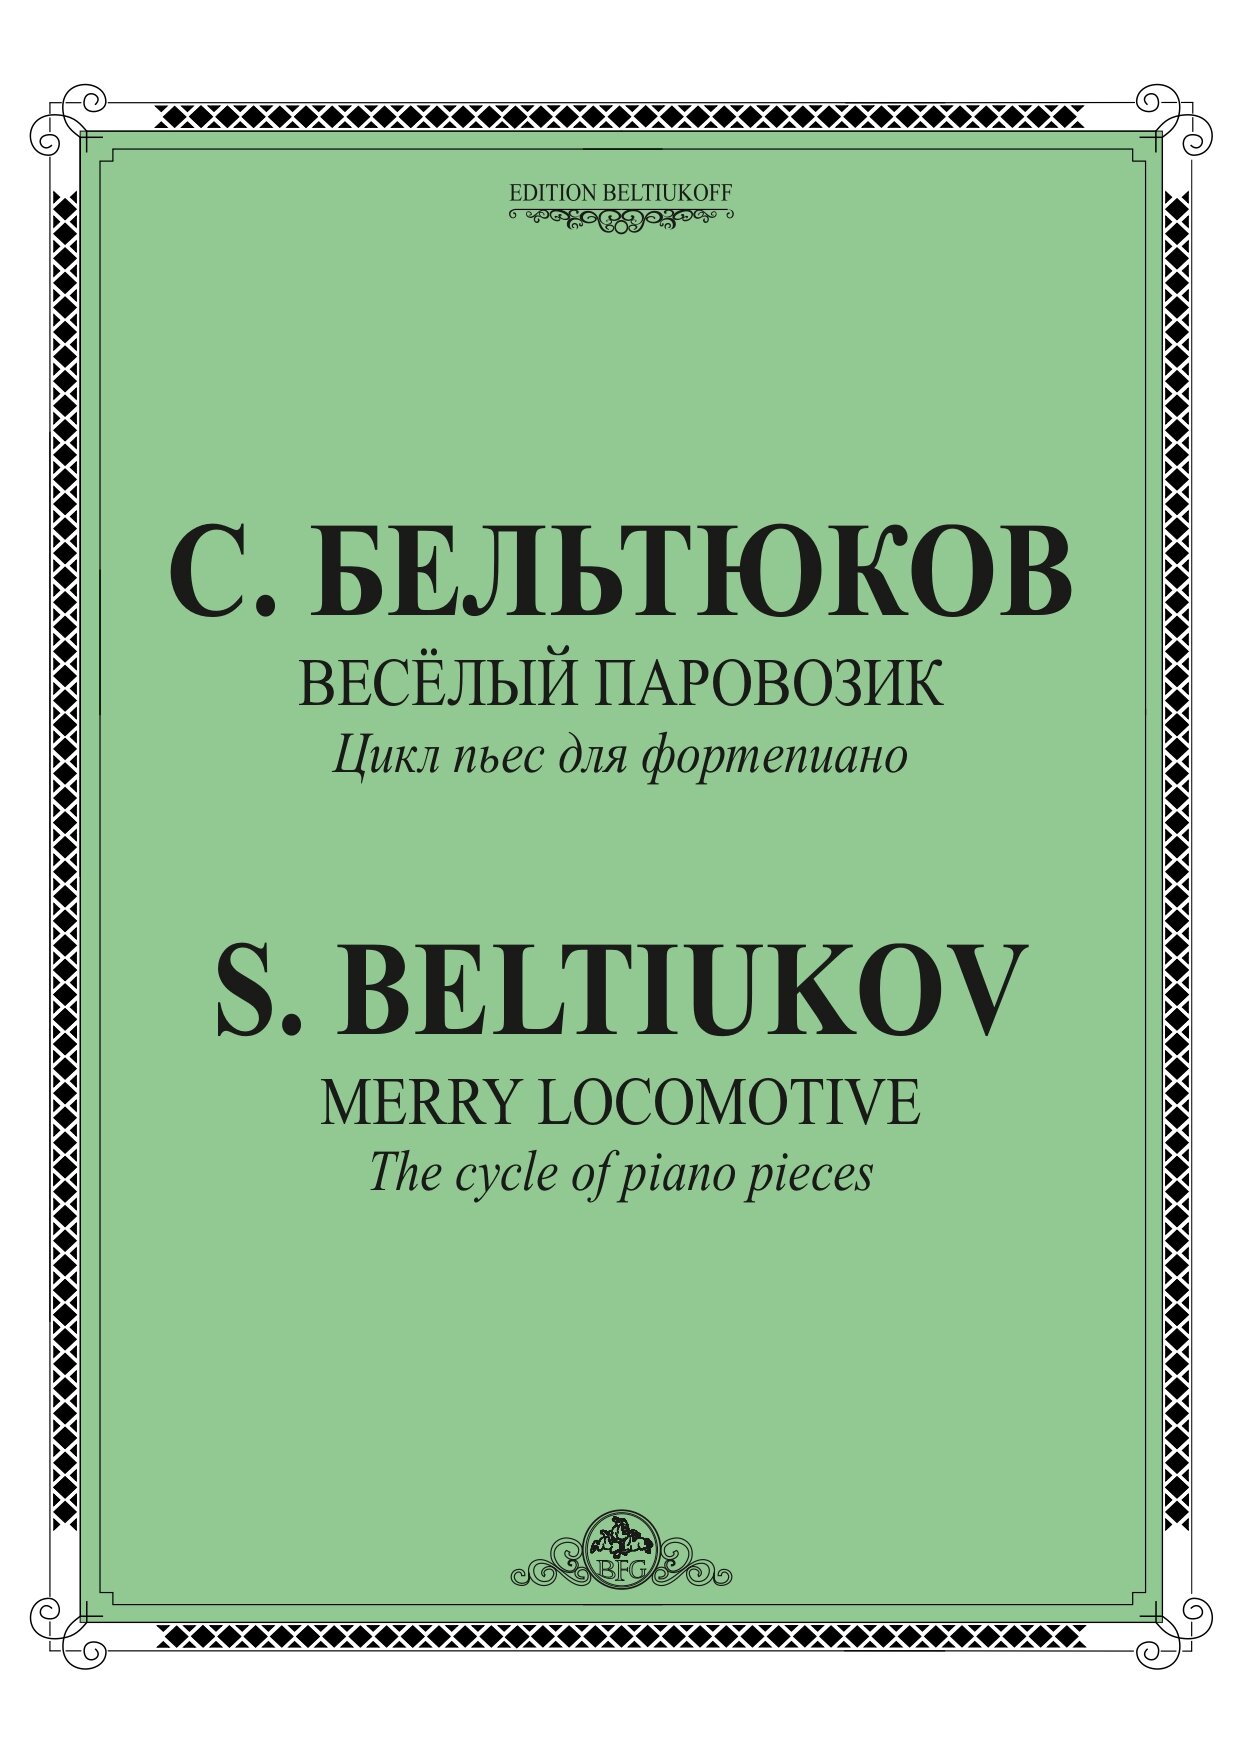 С. Бельтюков - Веселый паровозик (2015)-1_page-0001.jpg